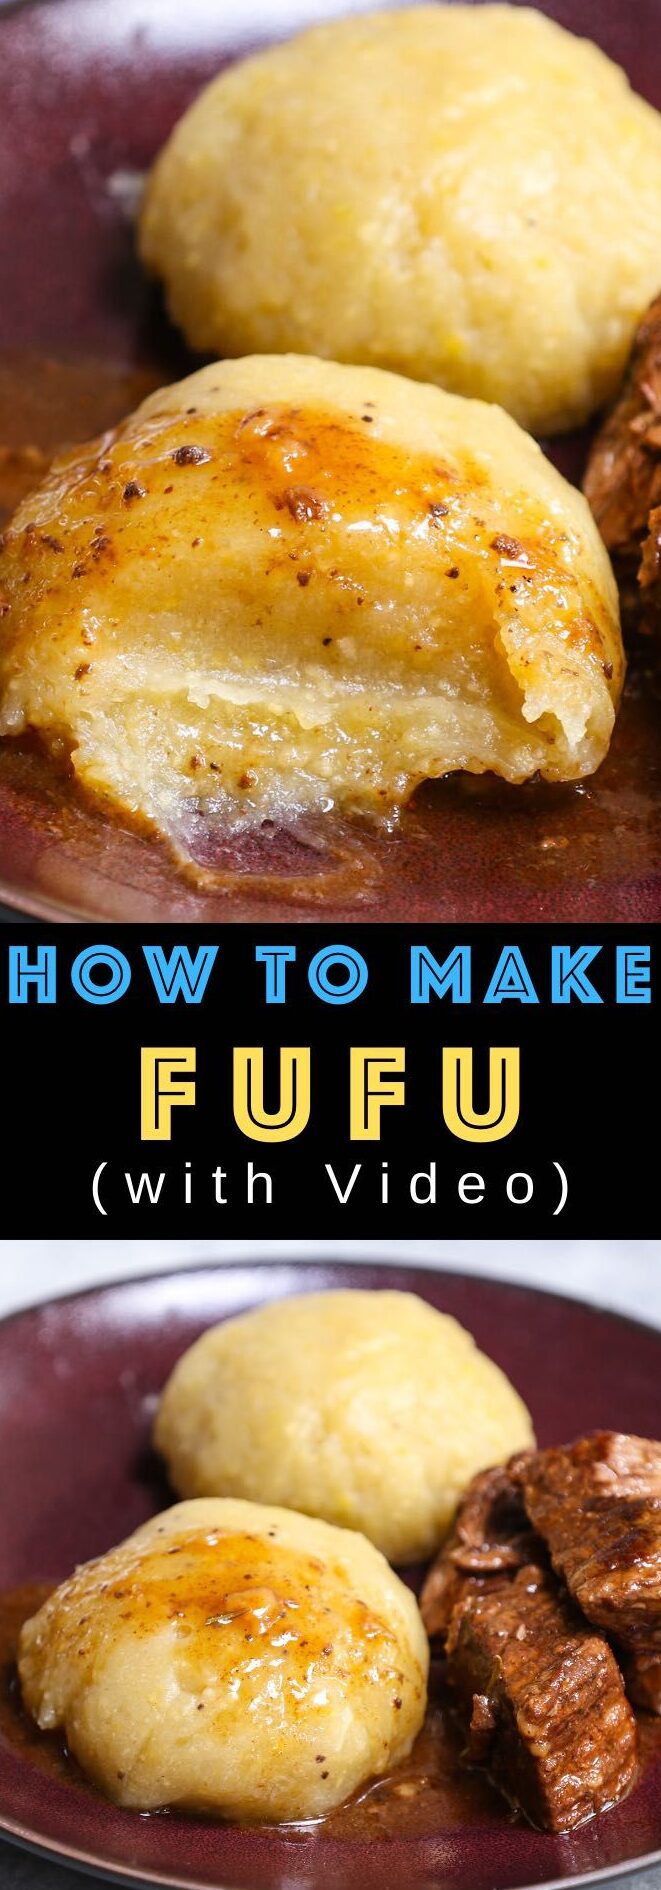 Cómo hacer fufu desde cero (fufu nigeriano)